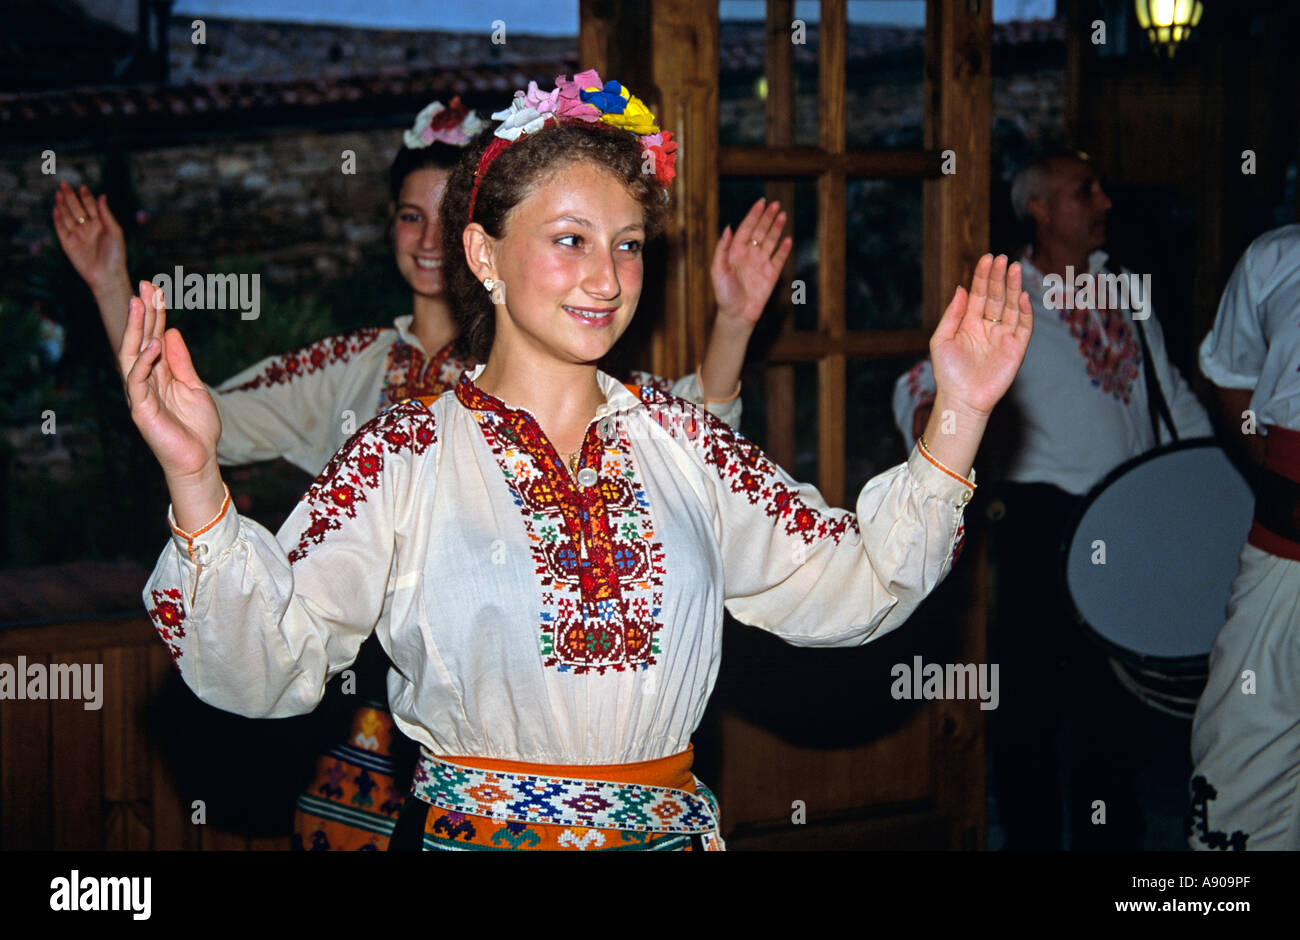 Female dancer in national costume dancing, Arbanassi, Bulgaria Stock Photo